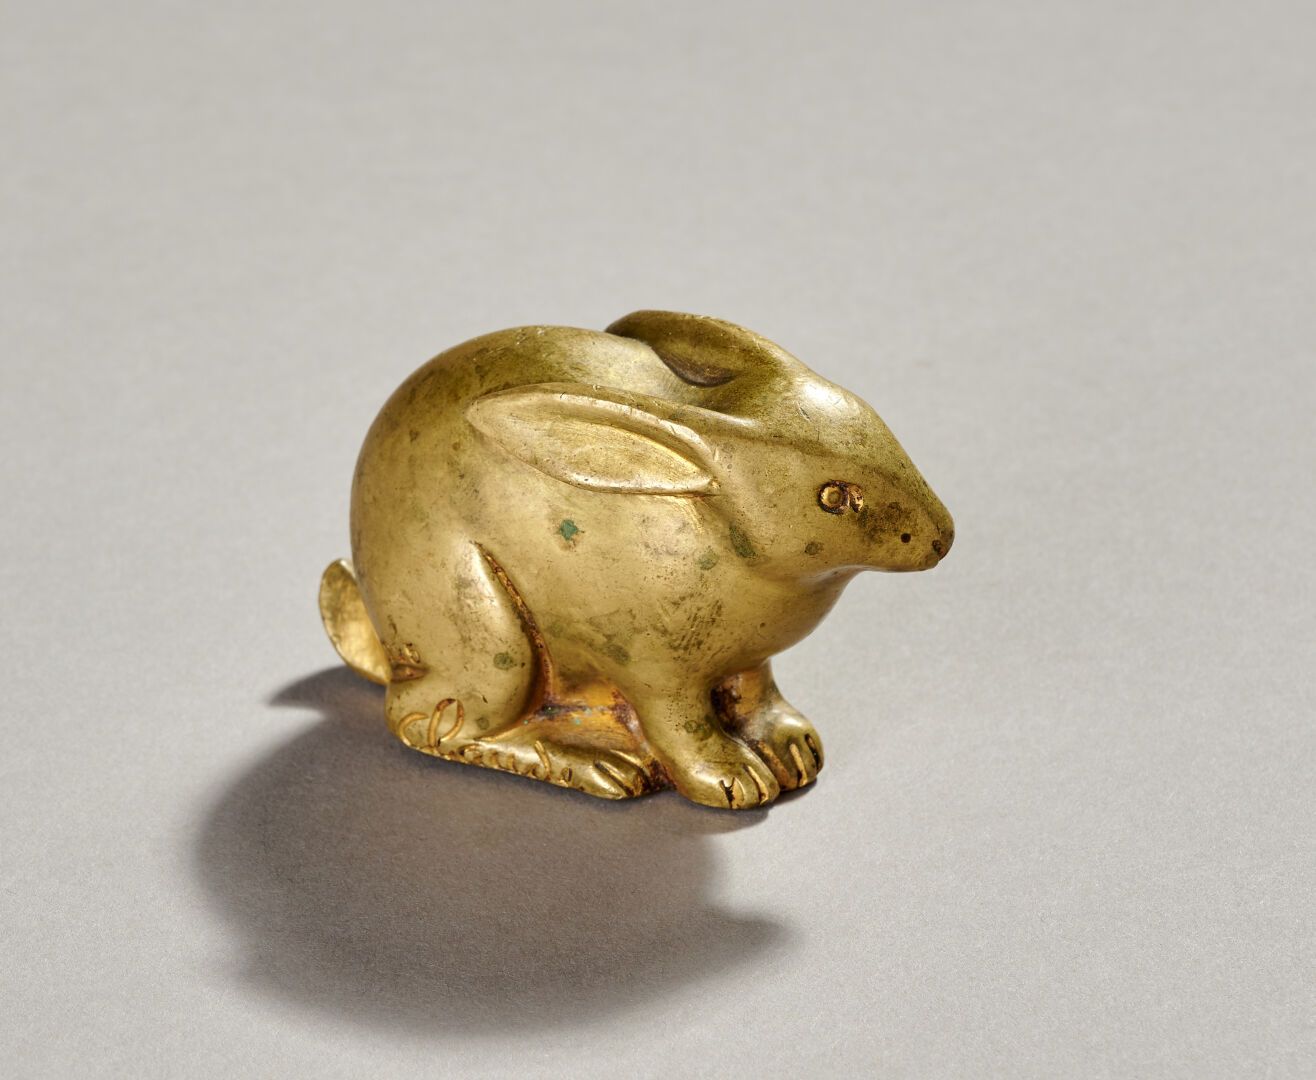 Null Marcel GUILLEMARD (1887-1966)

"Claude Rabbit".

Bronzeobjekt mit goldener &hellip;